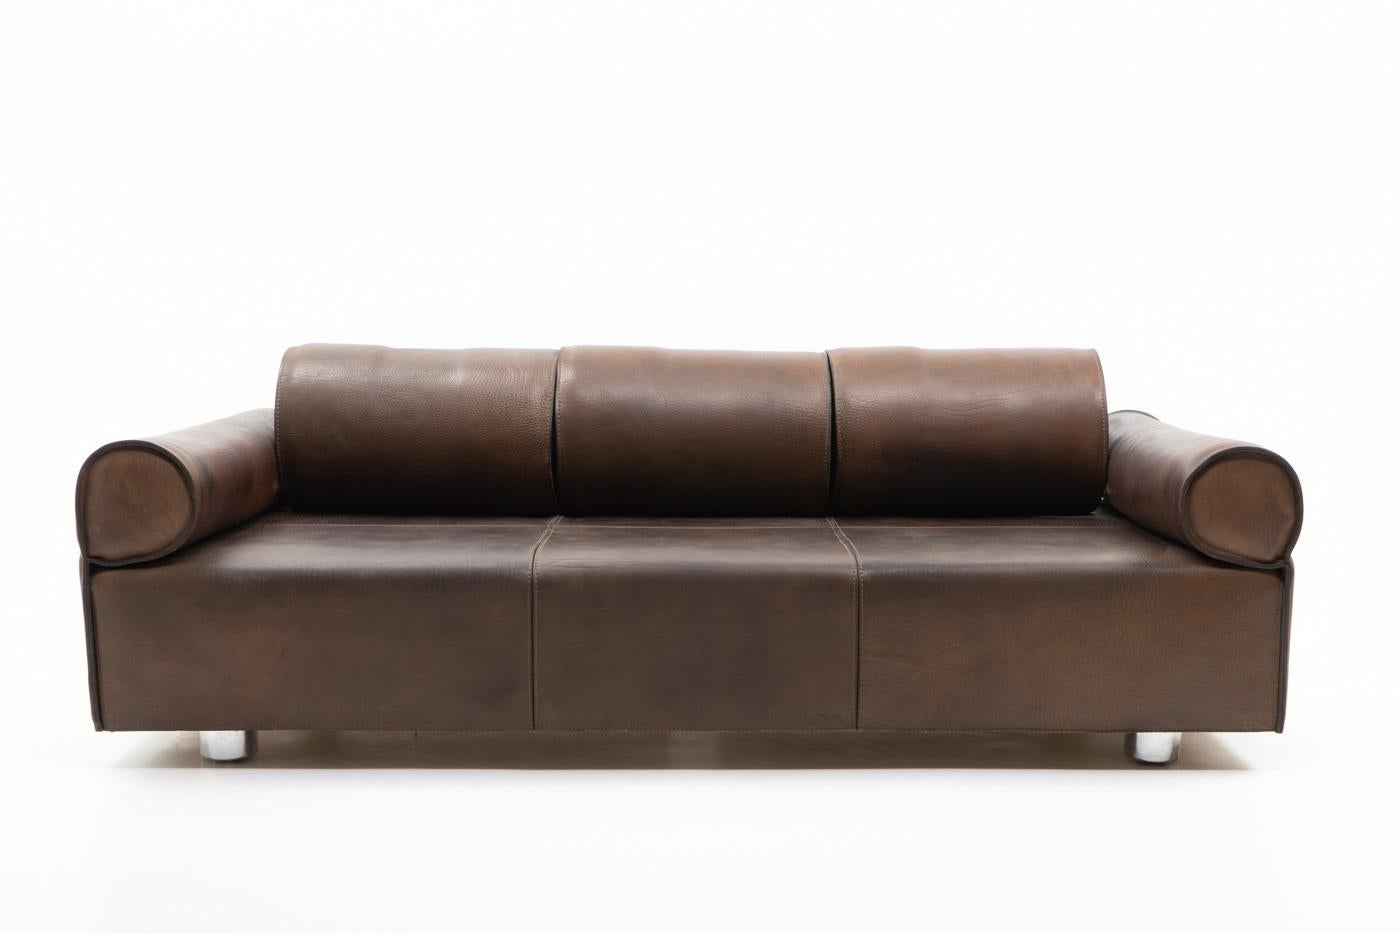 Italian Design Marzio Cecchi Three-seater Sofa in Brown Buffalo Leather, 1970s For Sale 5